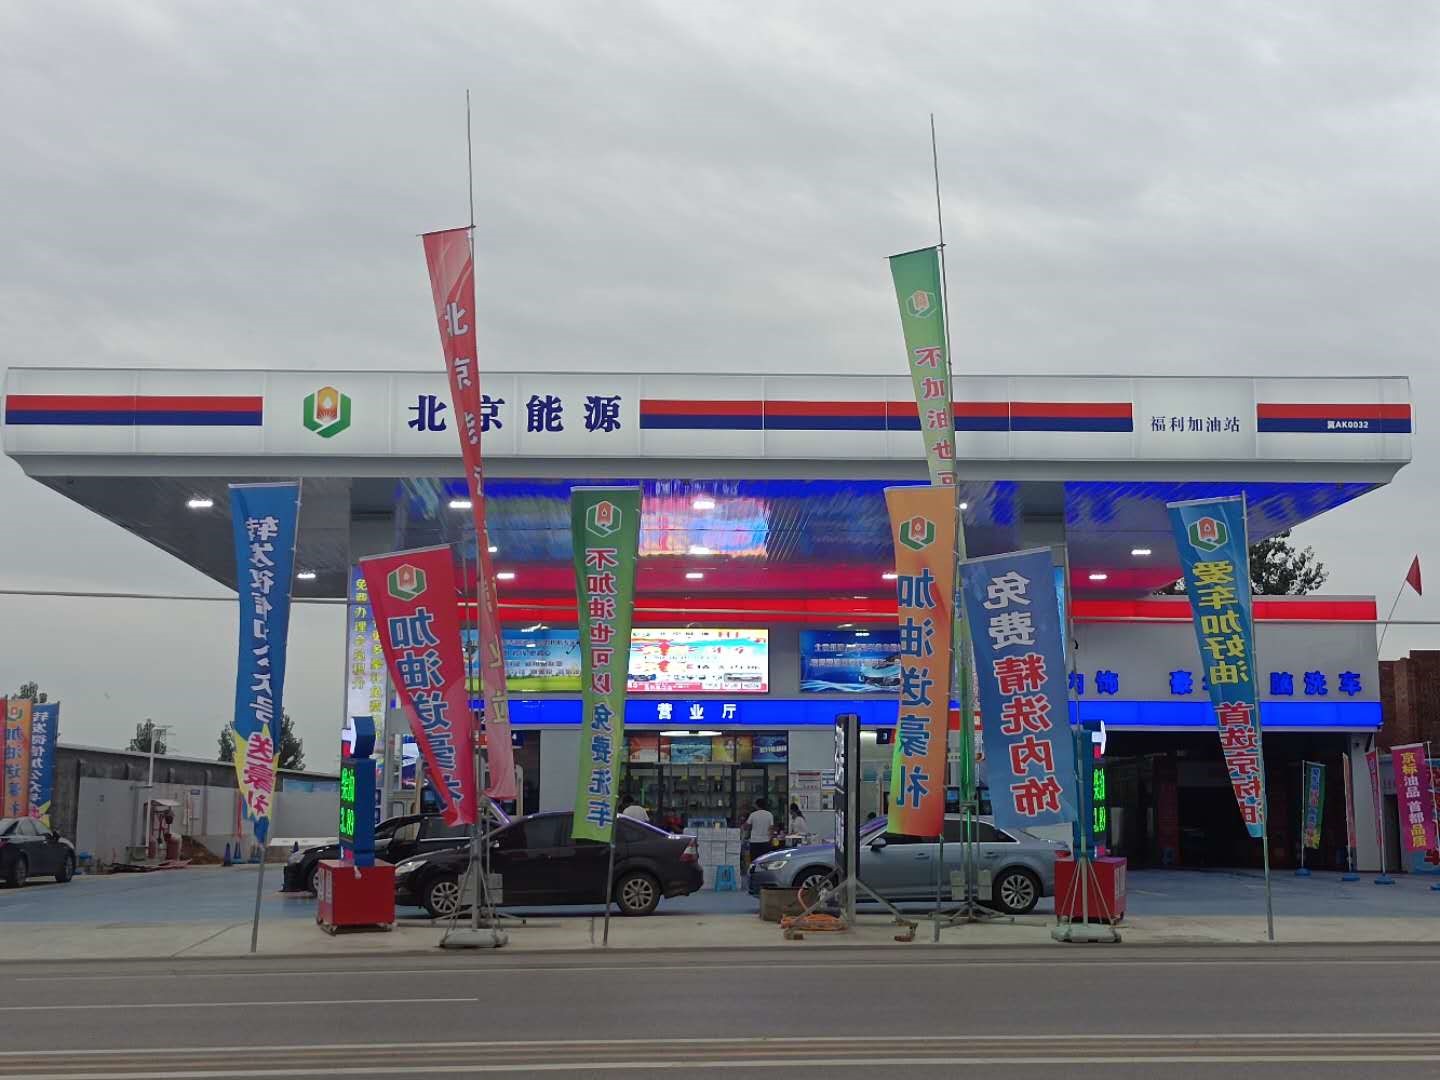         别名:北京能源福利加油站